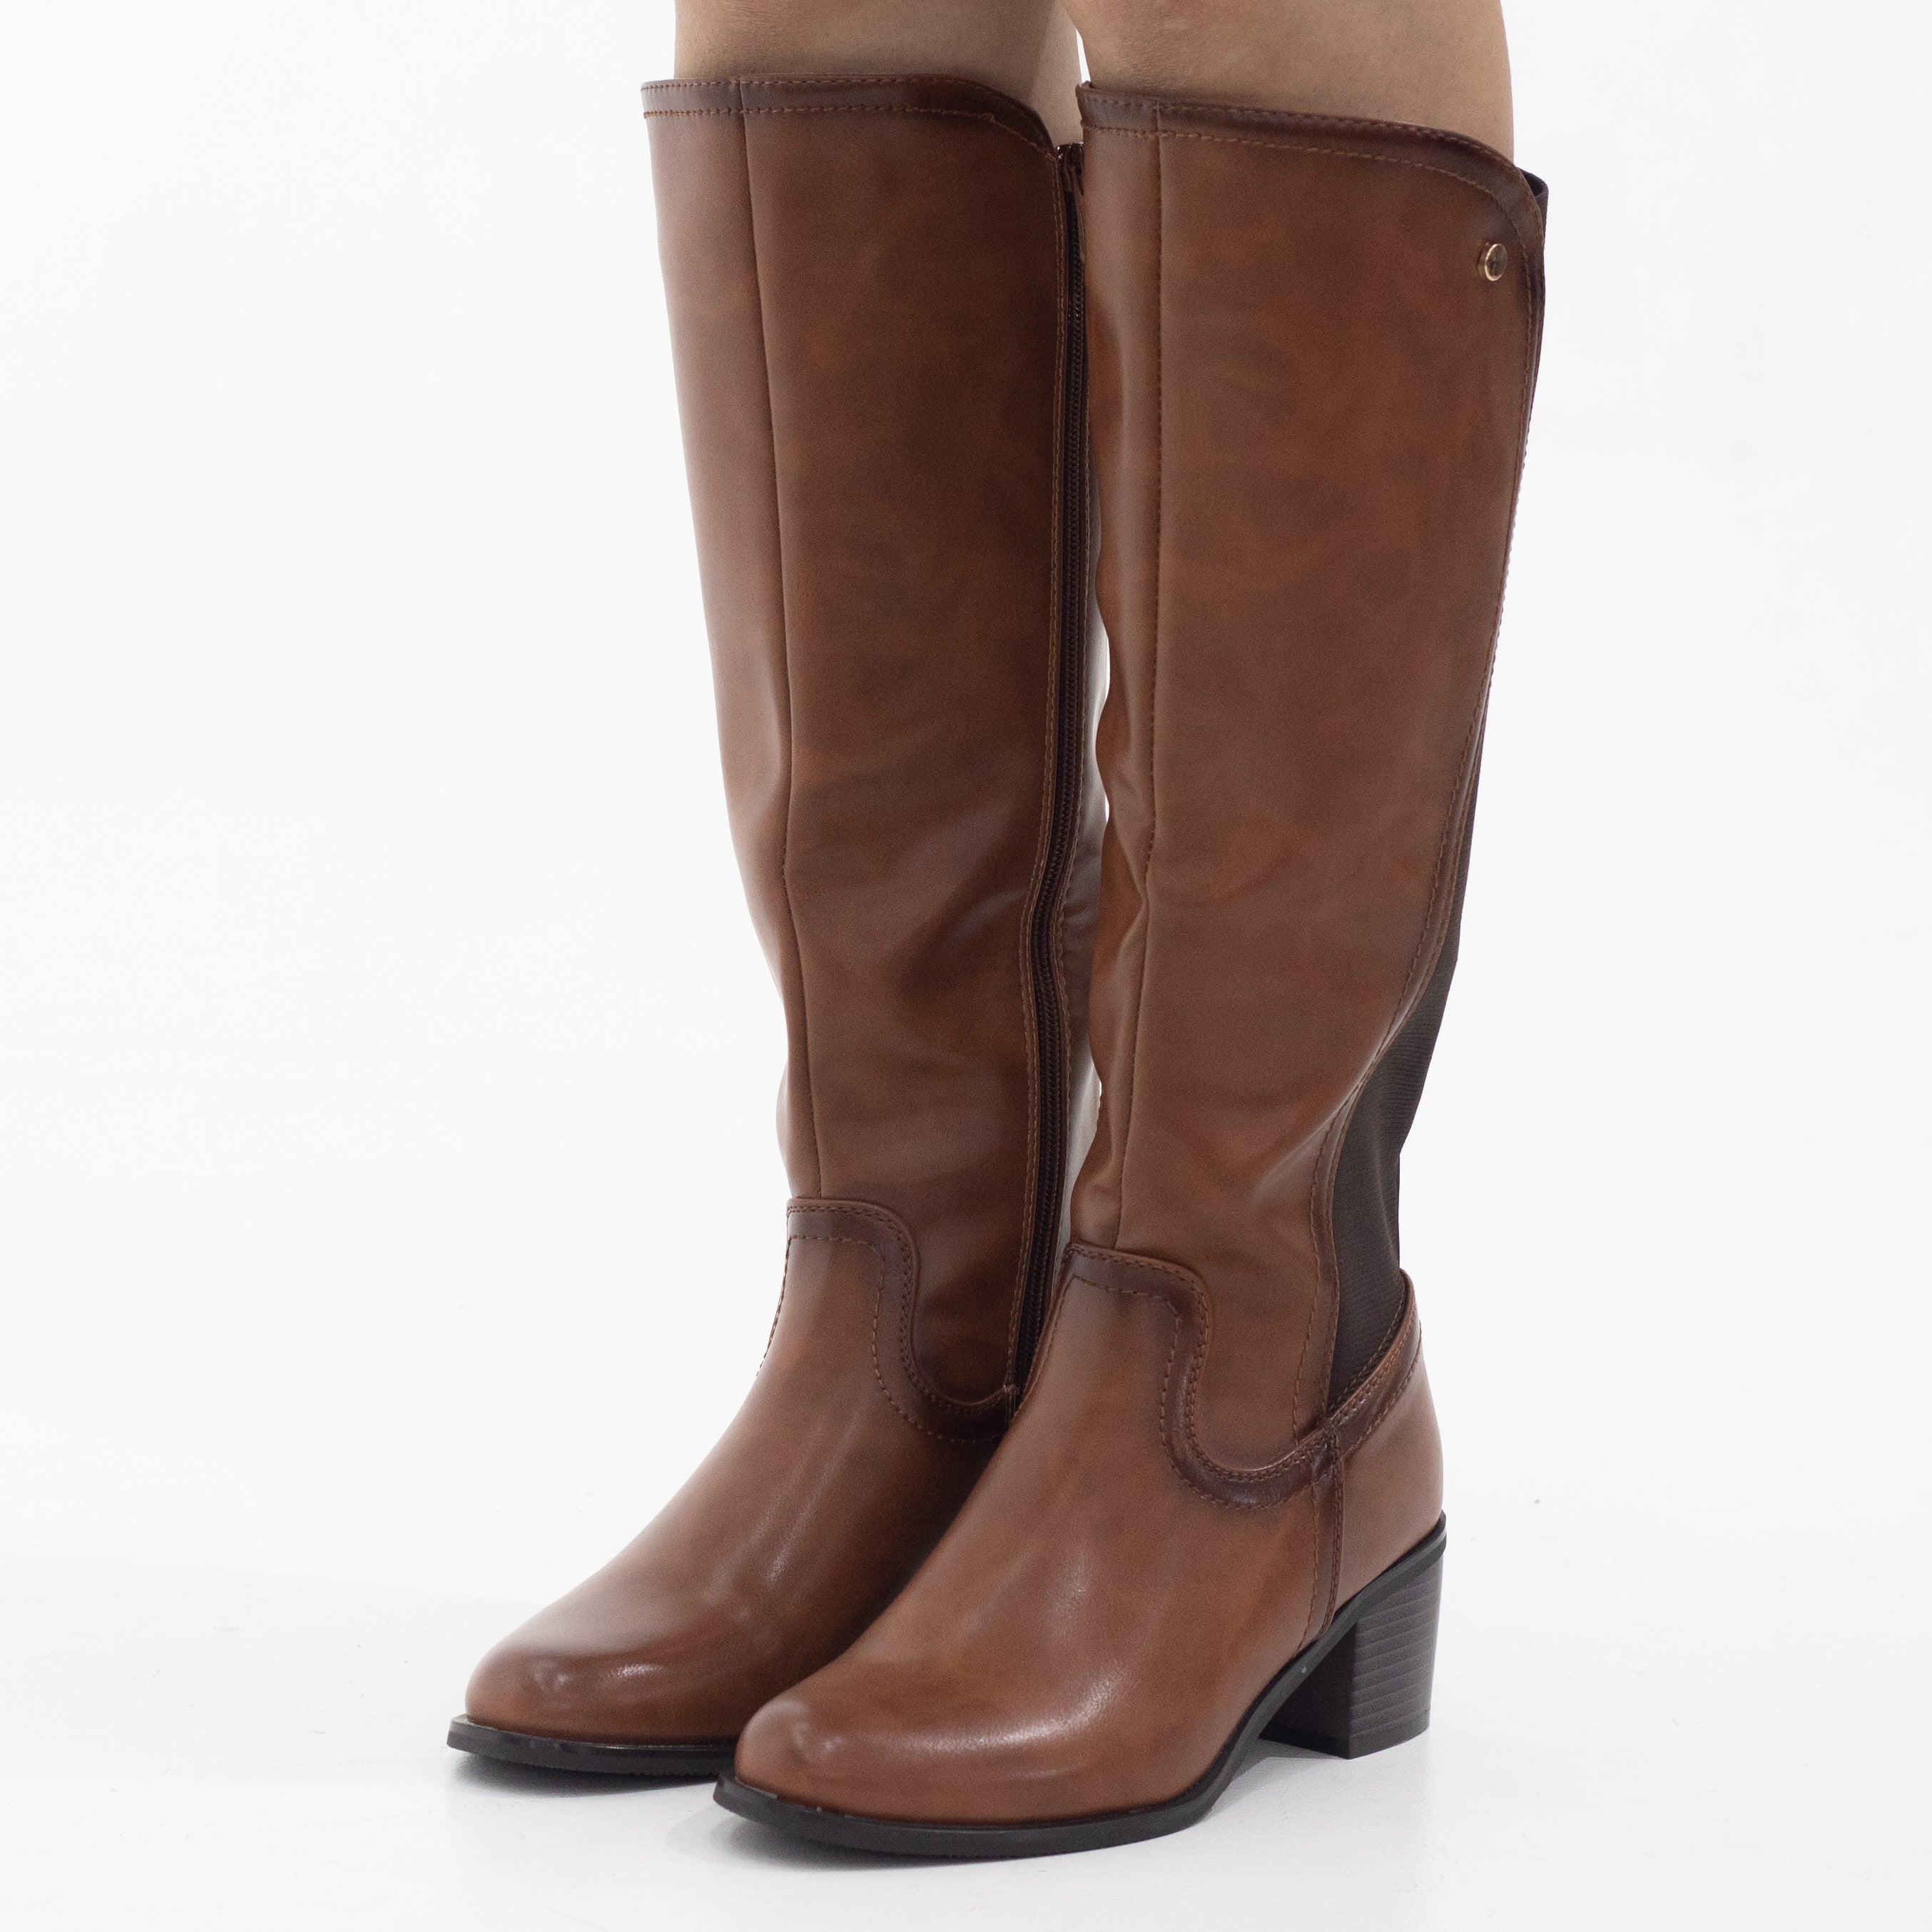 Yada knee high with elastic mat back boots 6cm heel tan